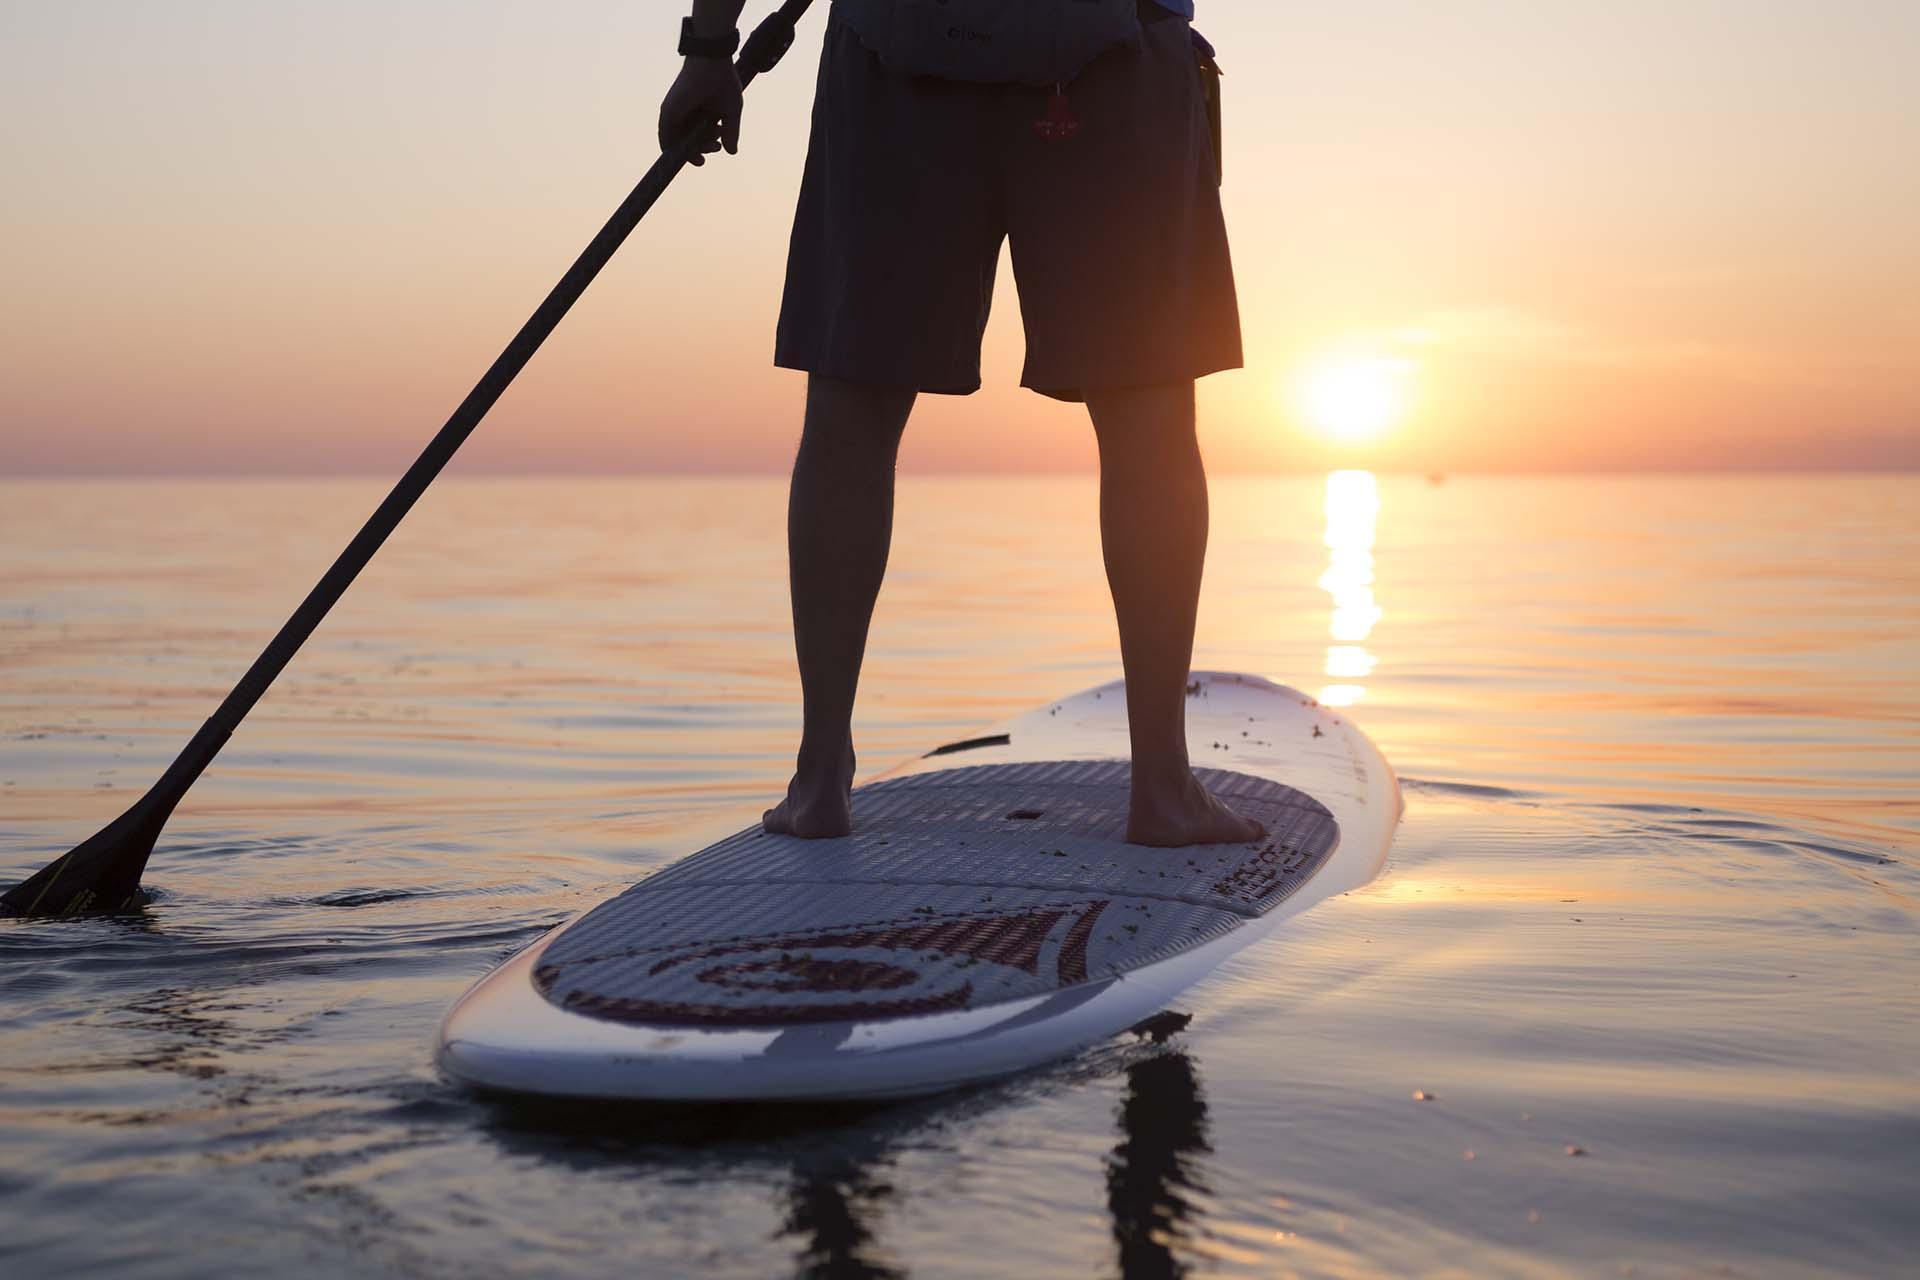 Stand up paddle boarding on Lake Michigan.